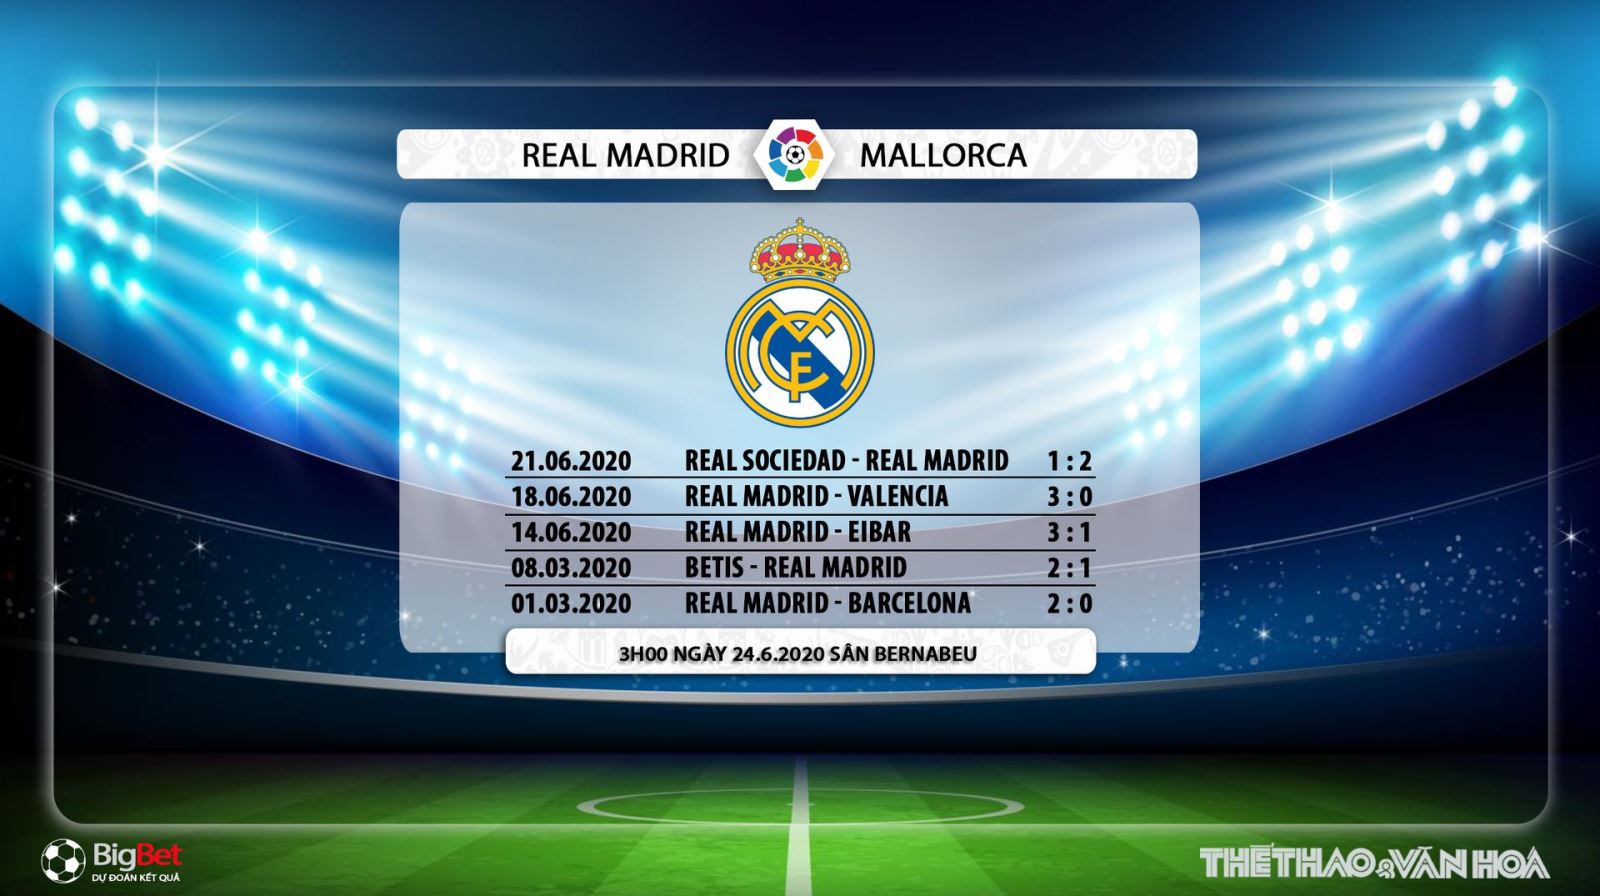 Real Madrid vs Mallorca, Real Madrid, Mallorca, trực tiếp bóng đá, bóng đá, bong da, La Liga